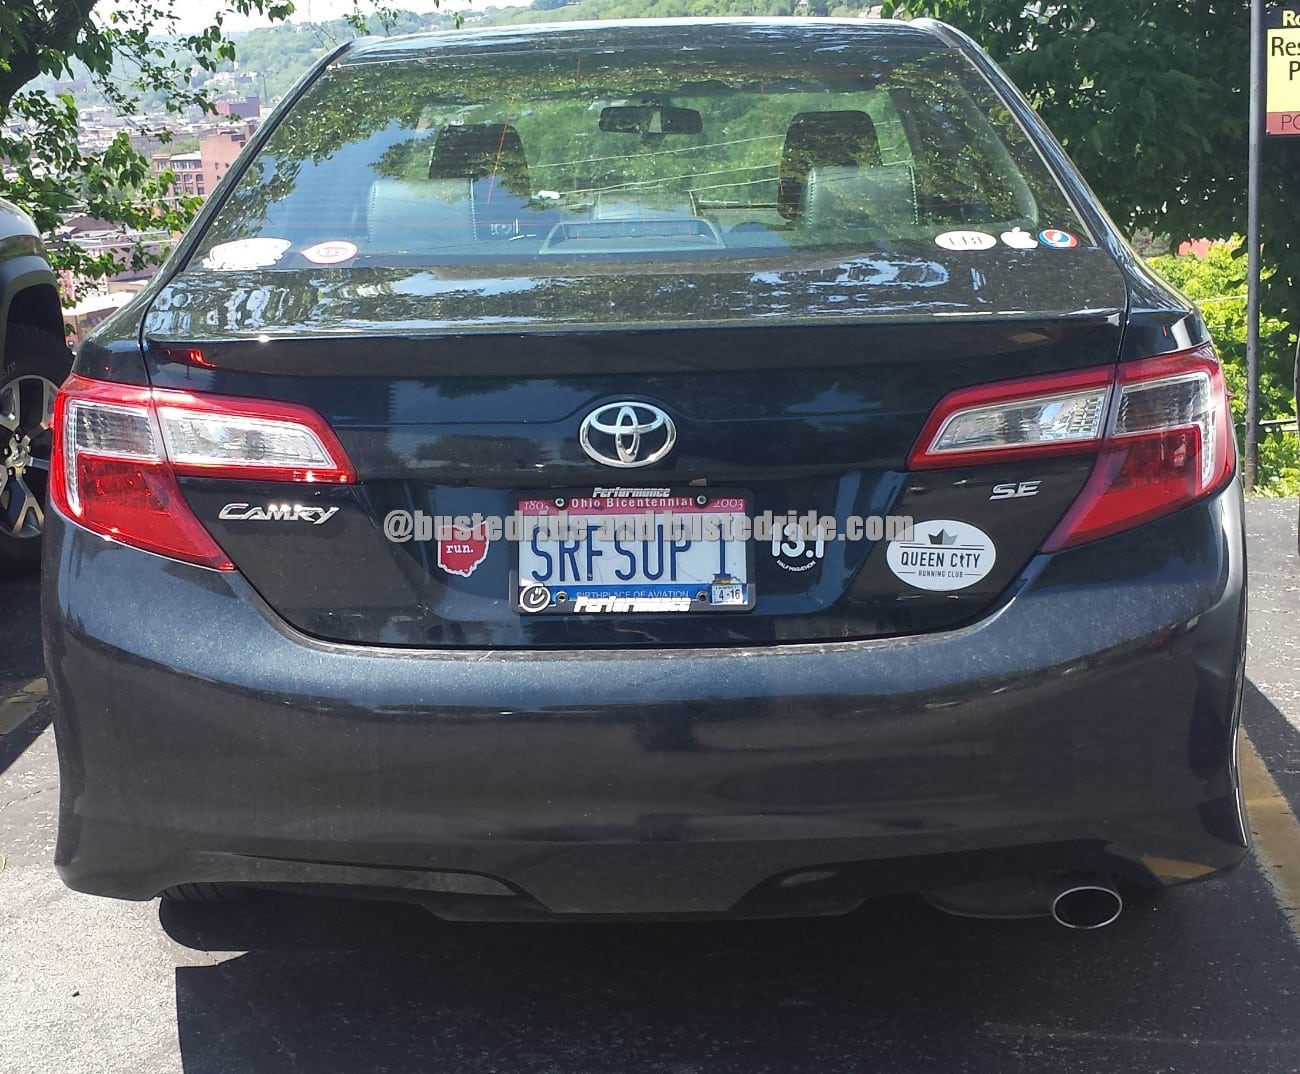 SRFSUP 1 - Vanity License Plate by Busted Ride